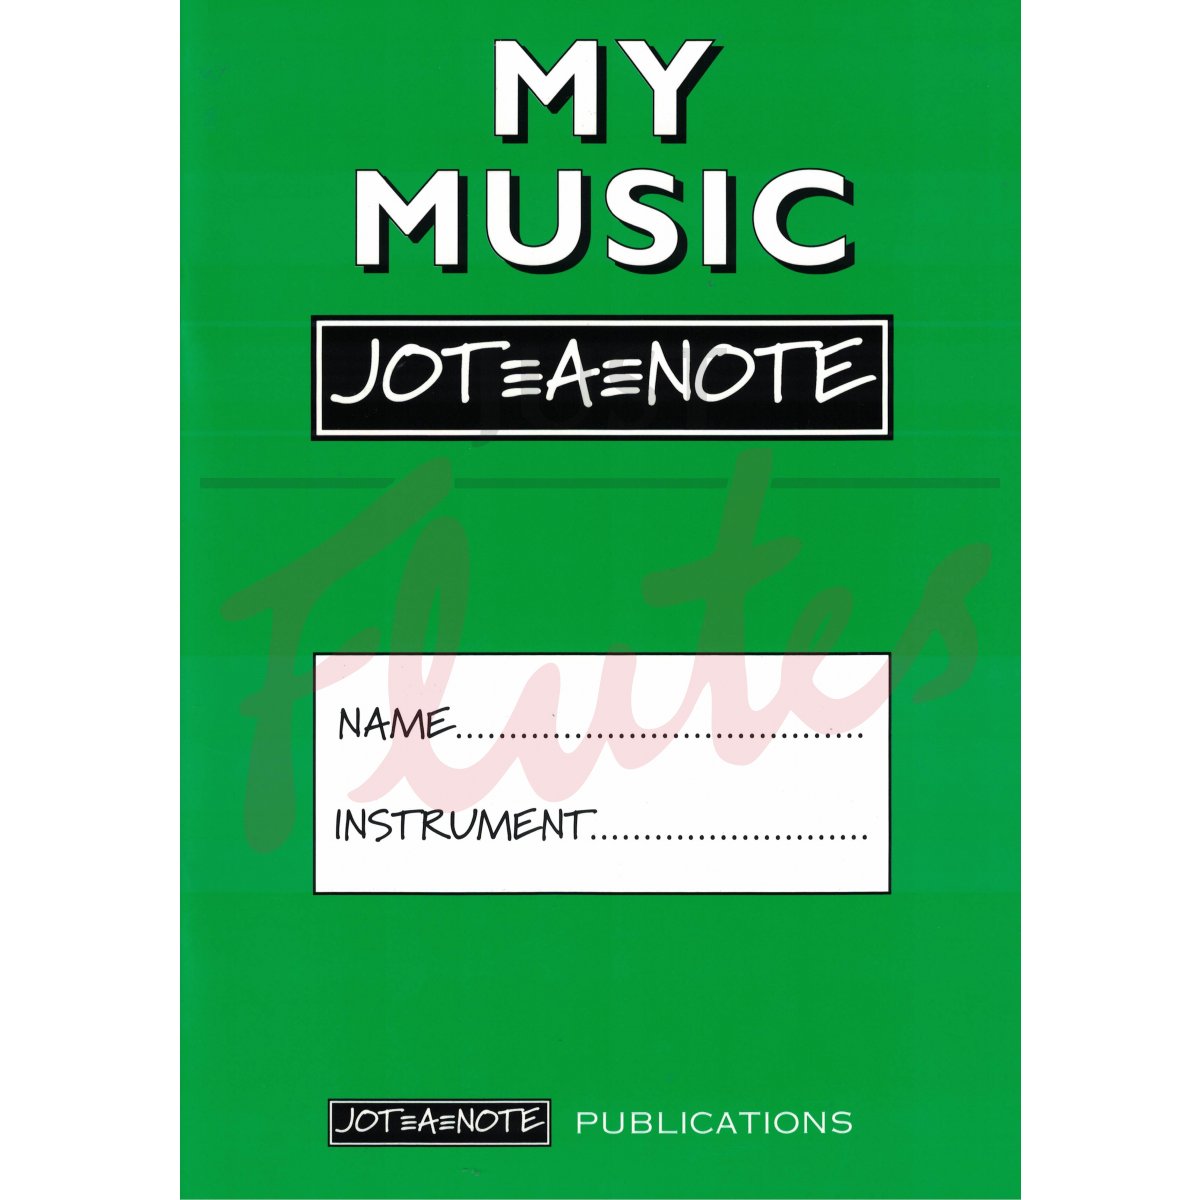 My Music Jot-A-Note (A4 Green)